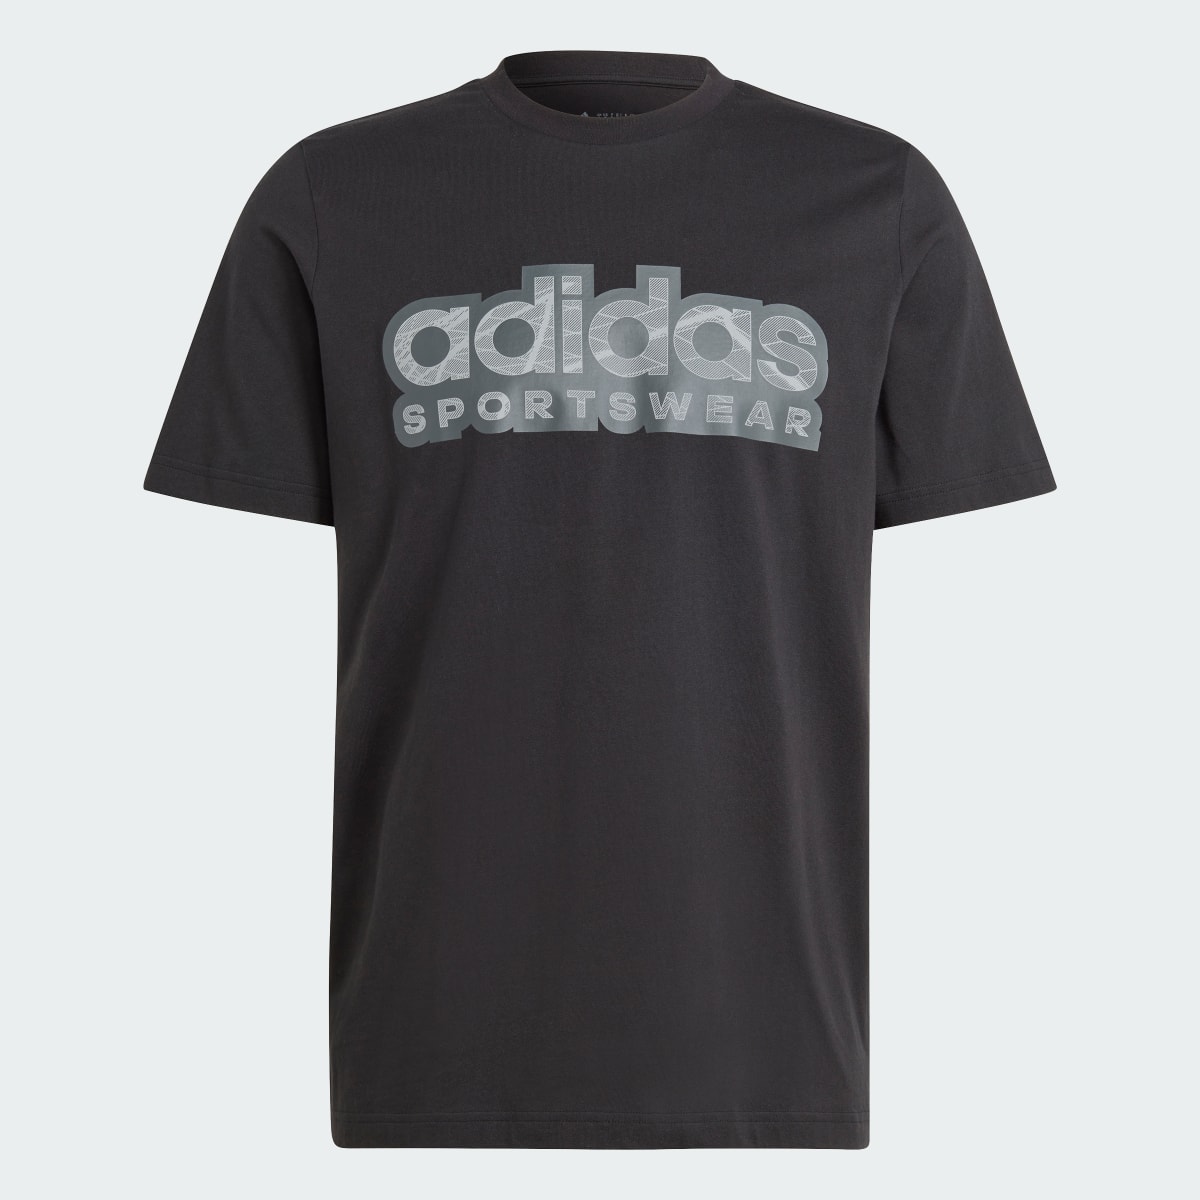 Adidas Tiro Graphic T-Shirt. 5